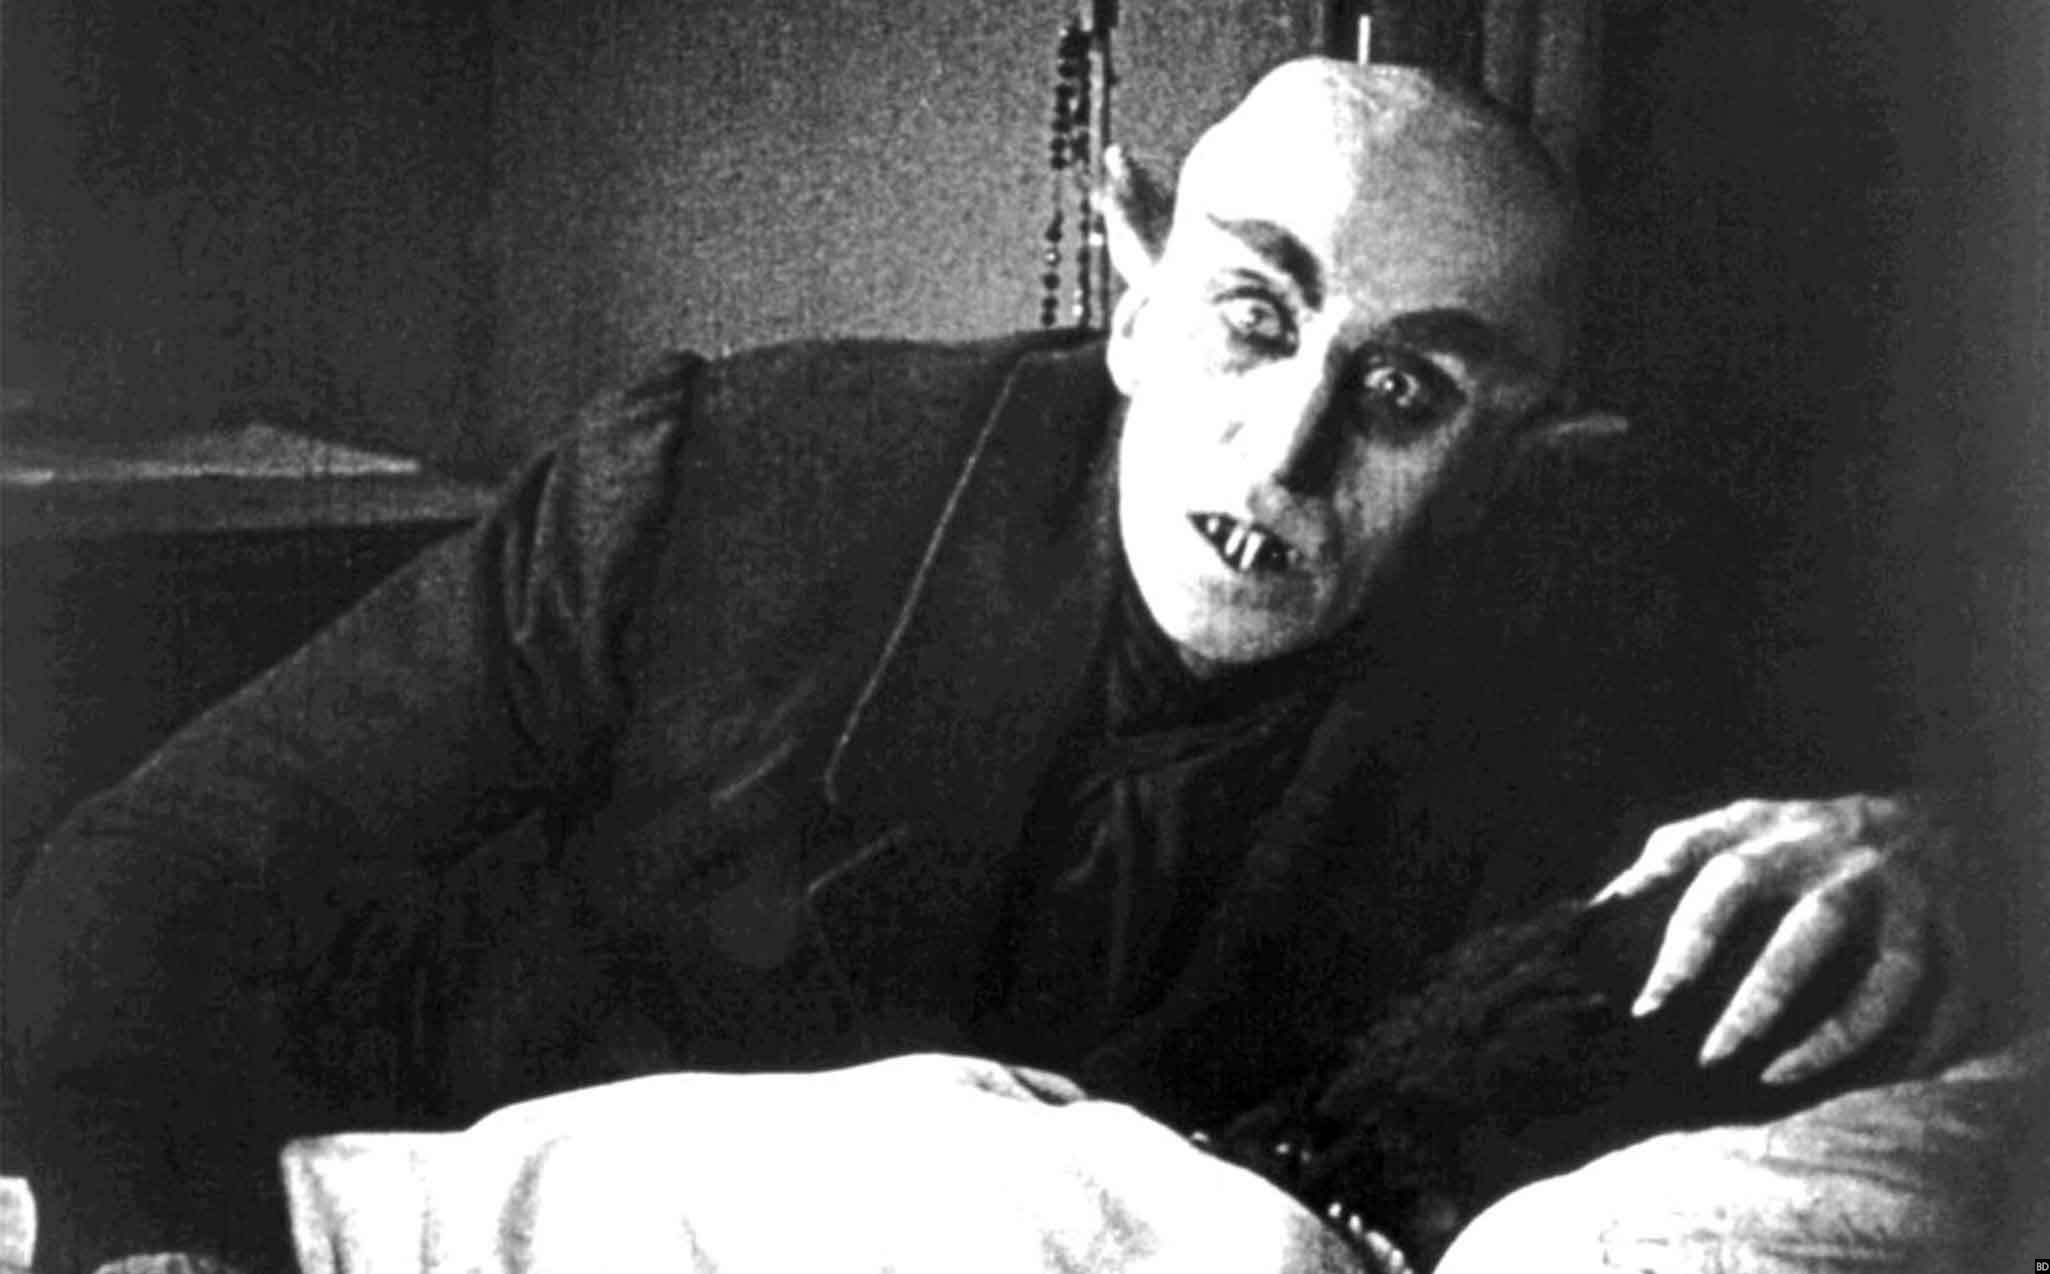 NOSFERATU | Protagonista do filme de 1922 era um vampiro de verdade?  Nerdtrip